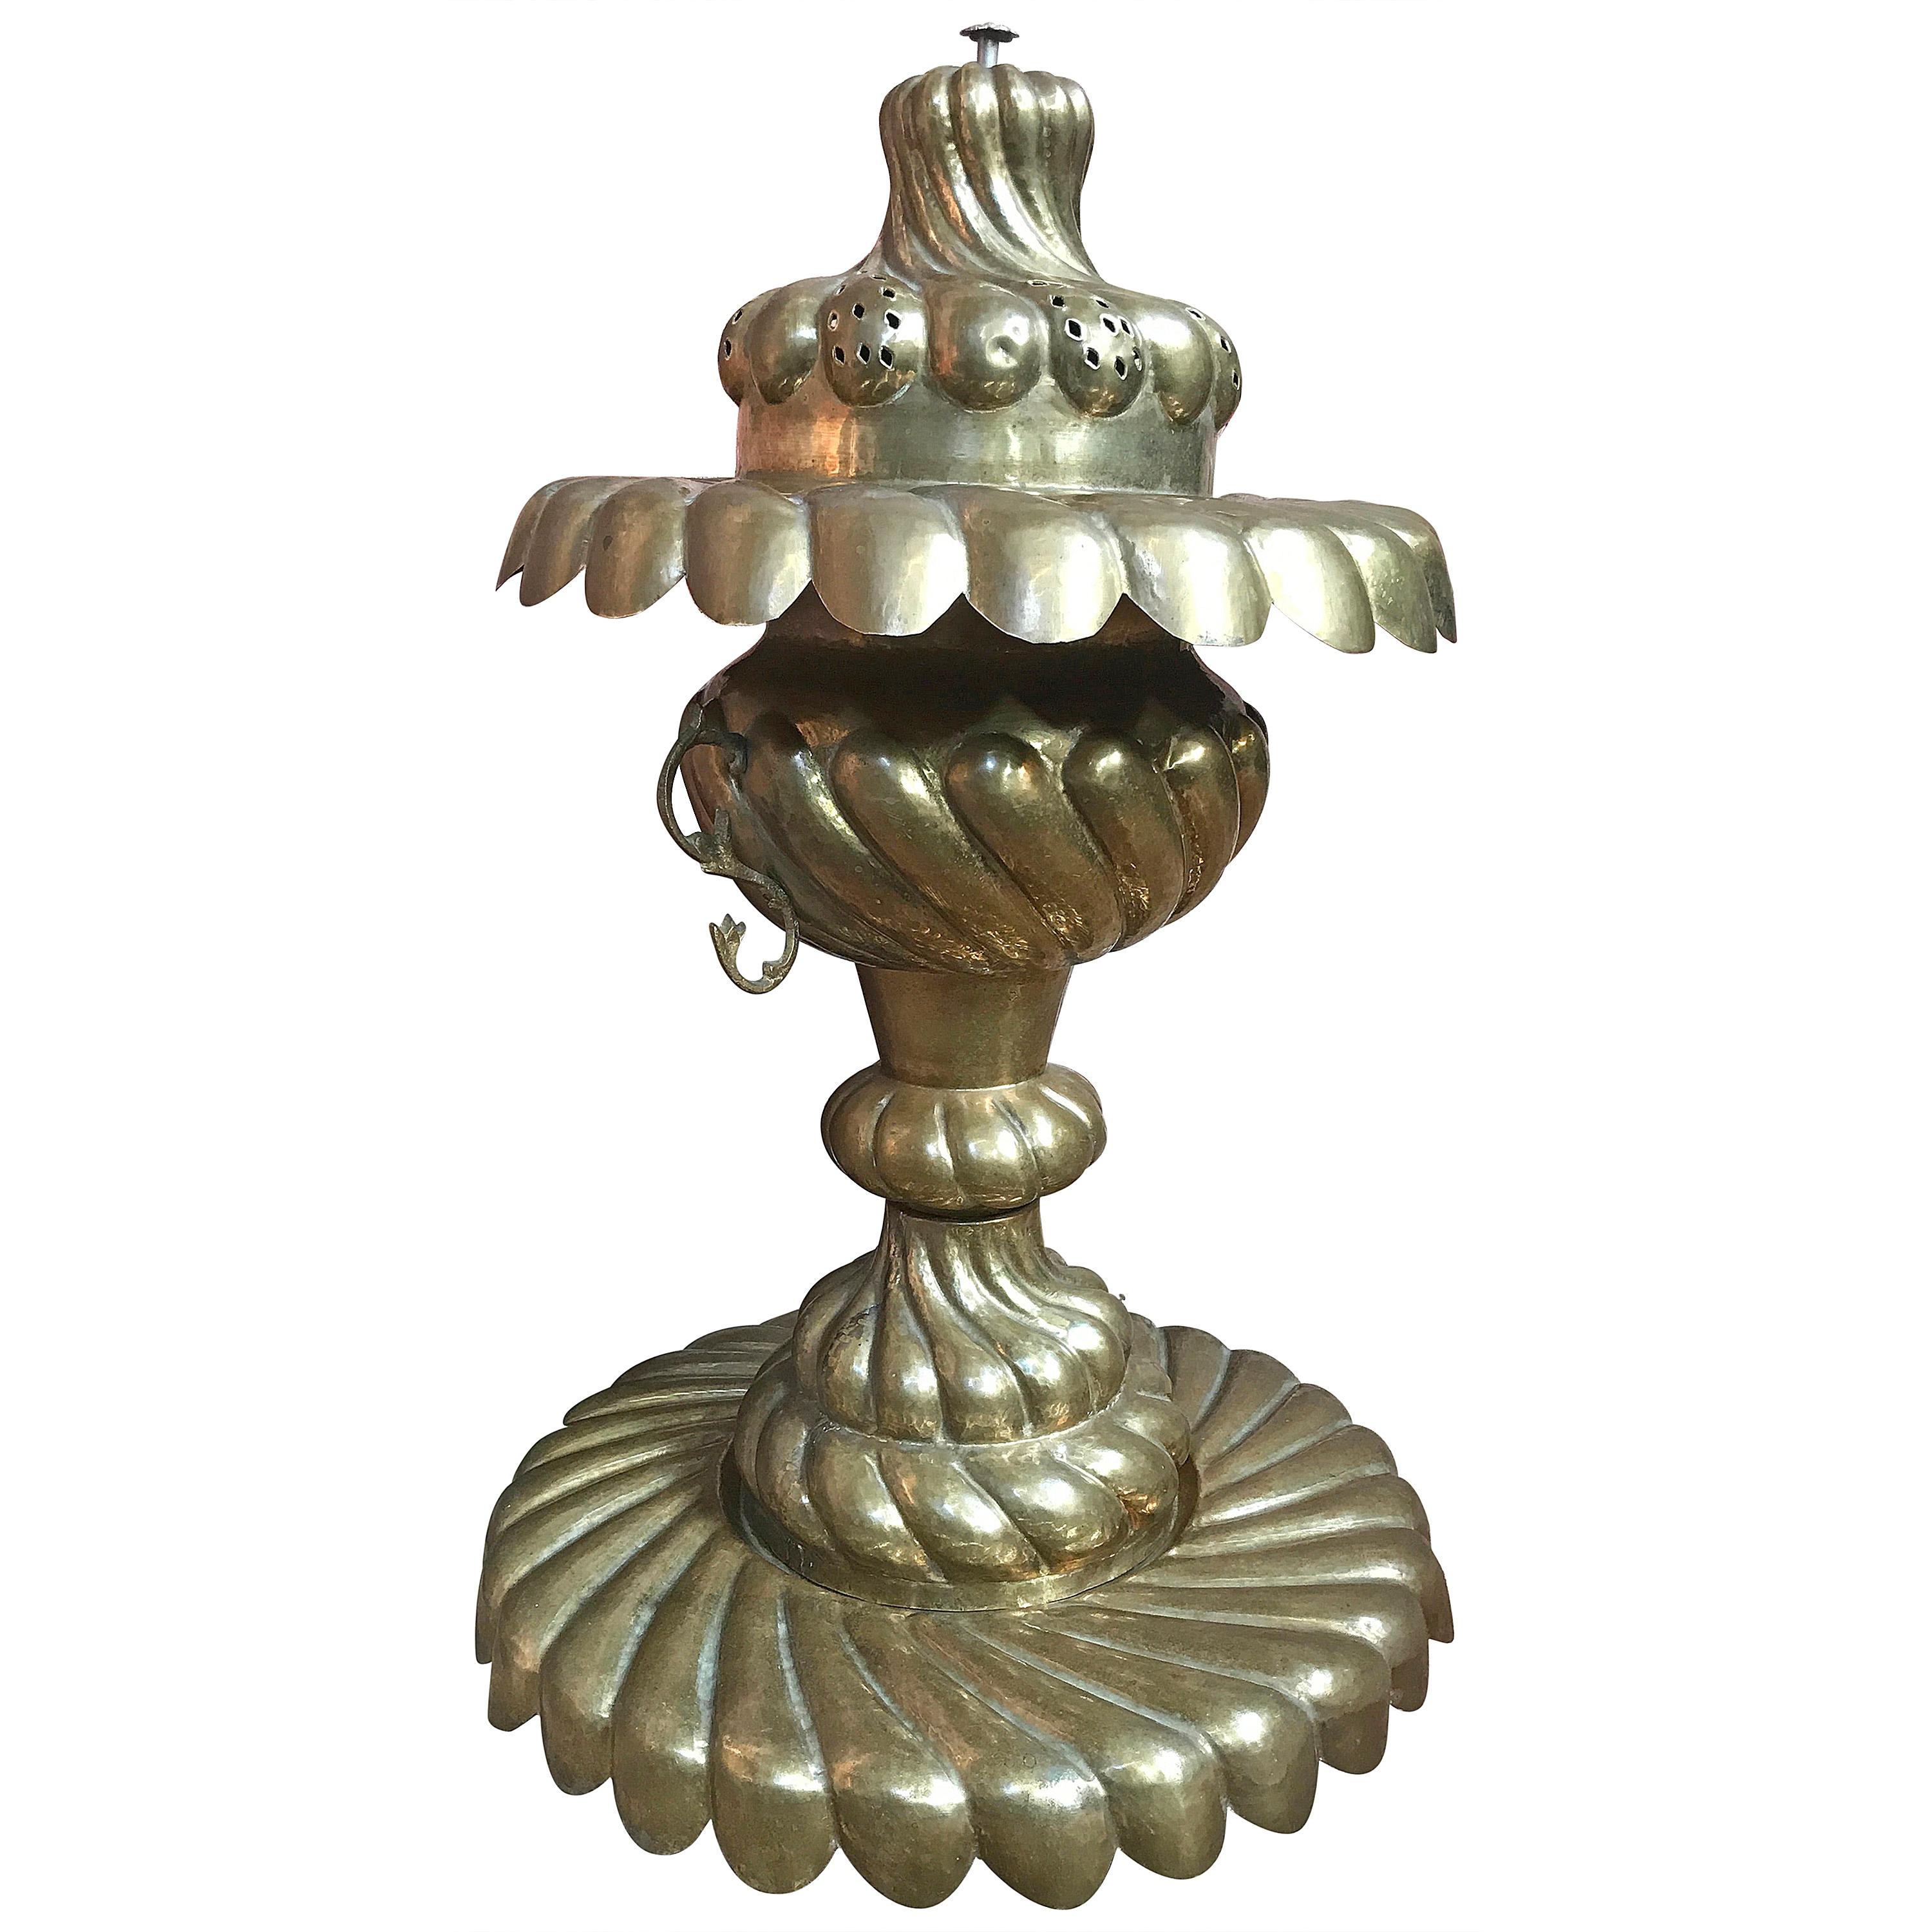 Grande urne décorative sculpturale en cuivre et laiton:: datant de 1930:: de fabrication artisanale en vente